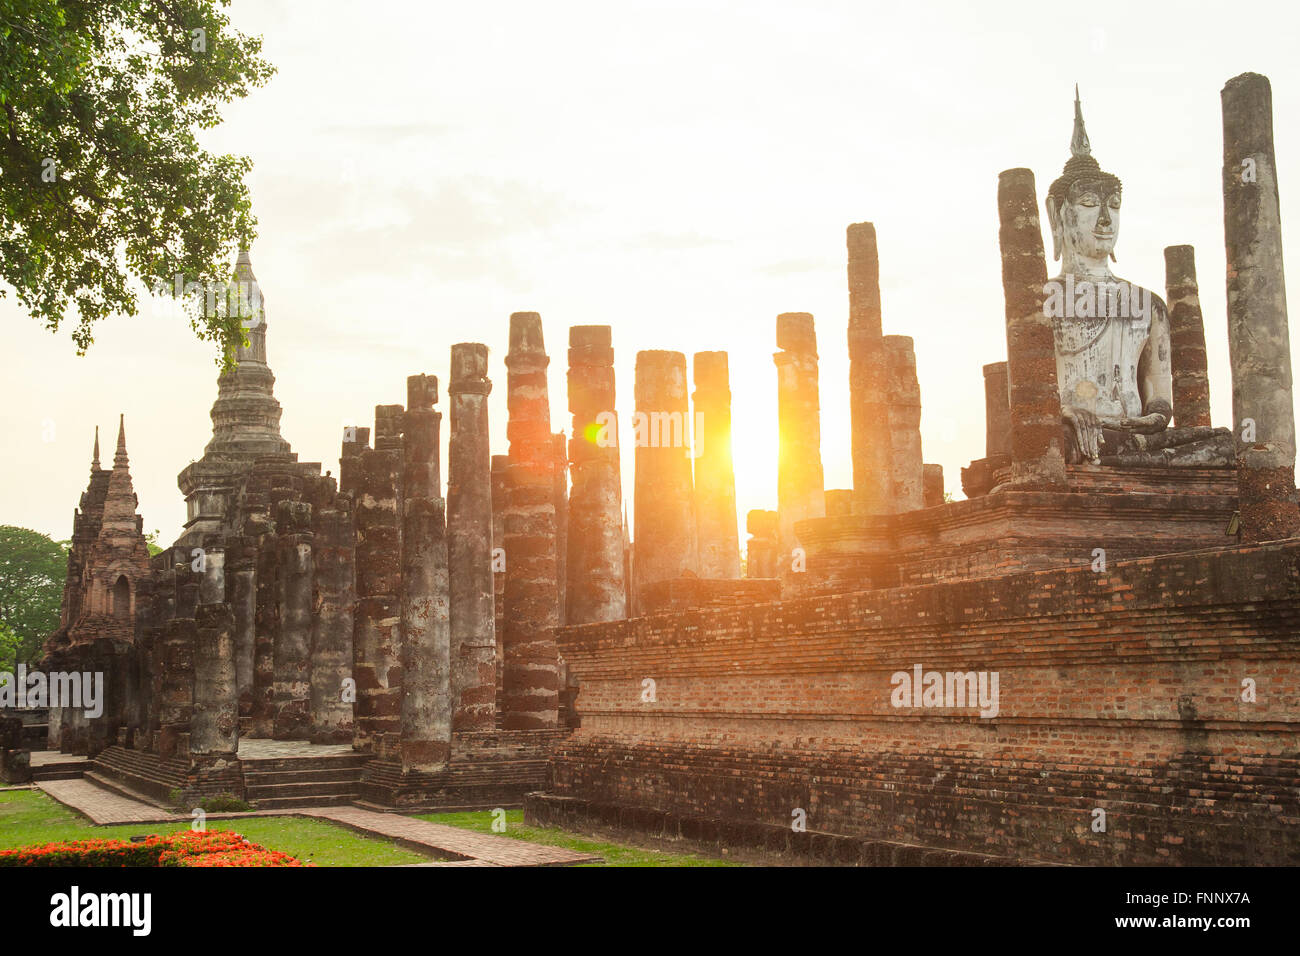 Sculpture Bouddha et ruines du temple en parc historique de Sukhothai, Thaïlande Banque D'Images